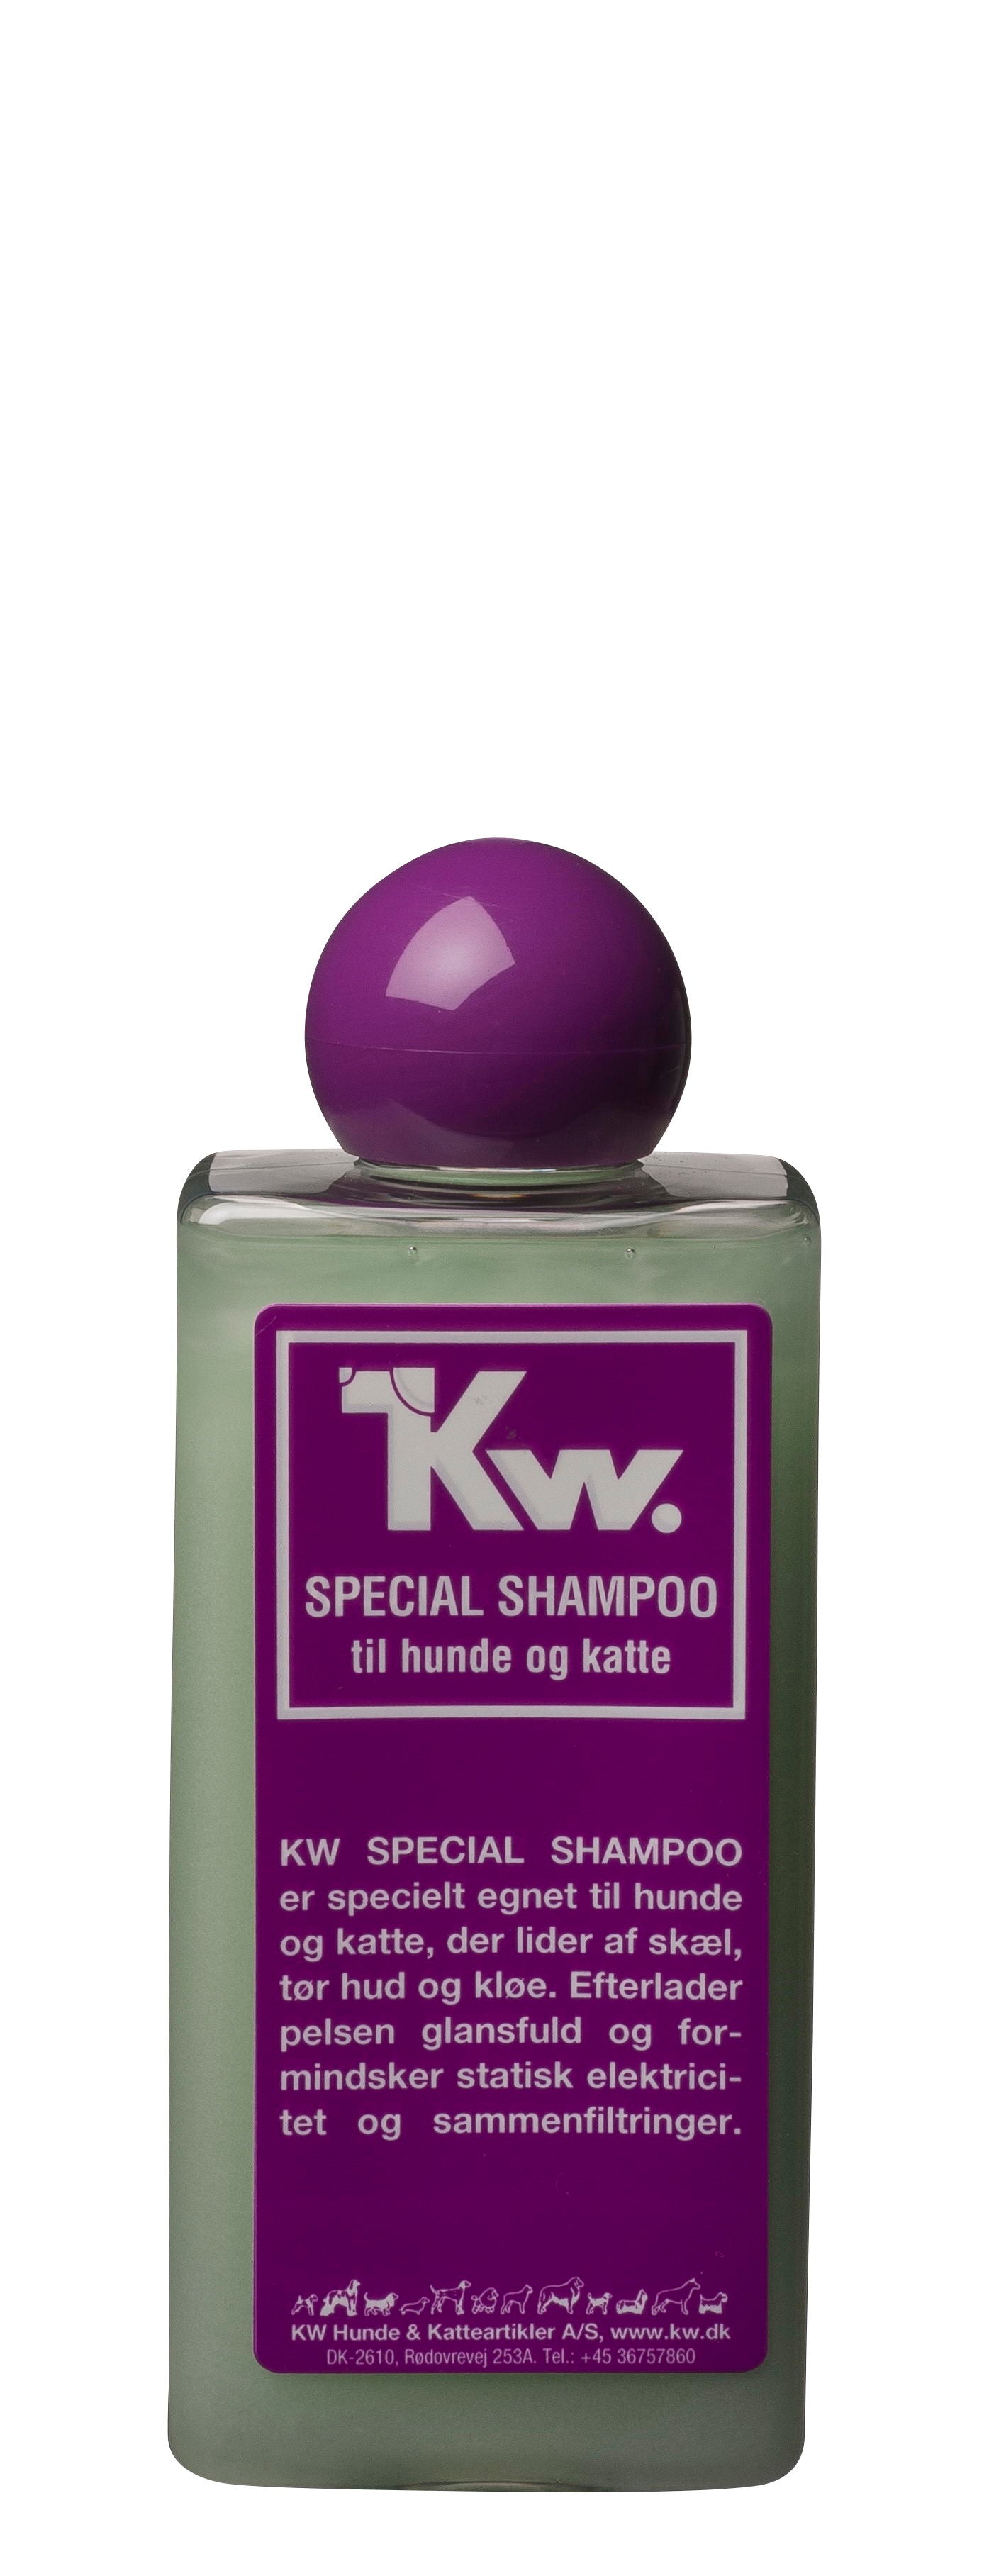 Billede af KW Special shampoo hos Petpower.dk